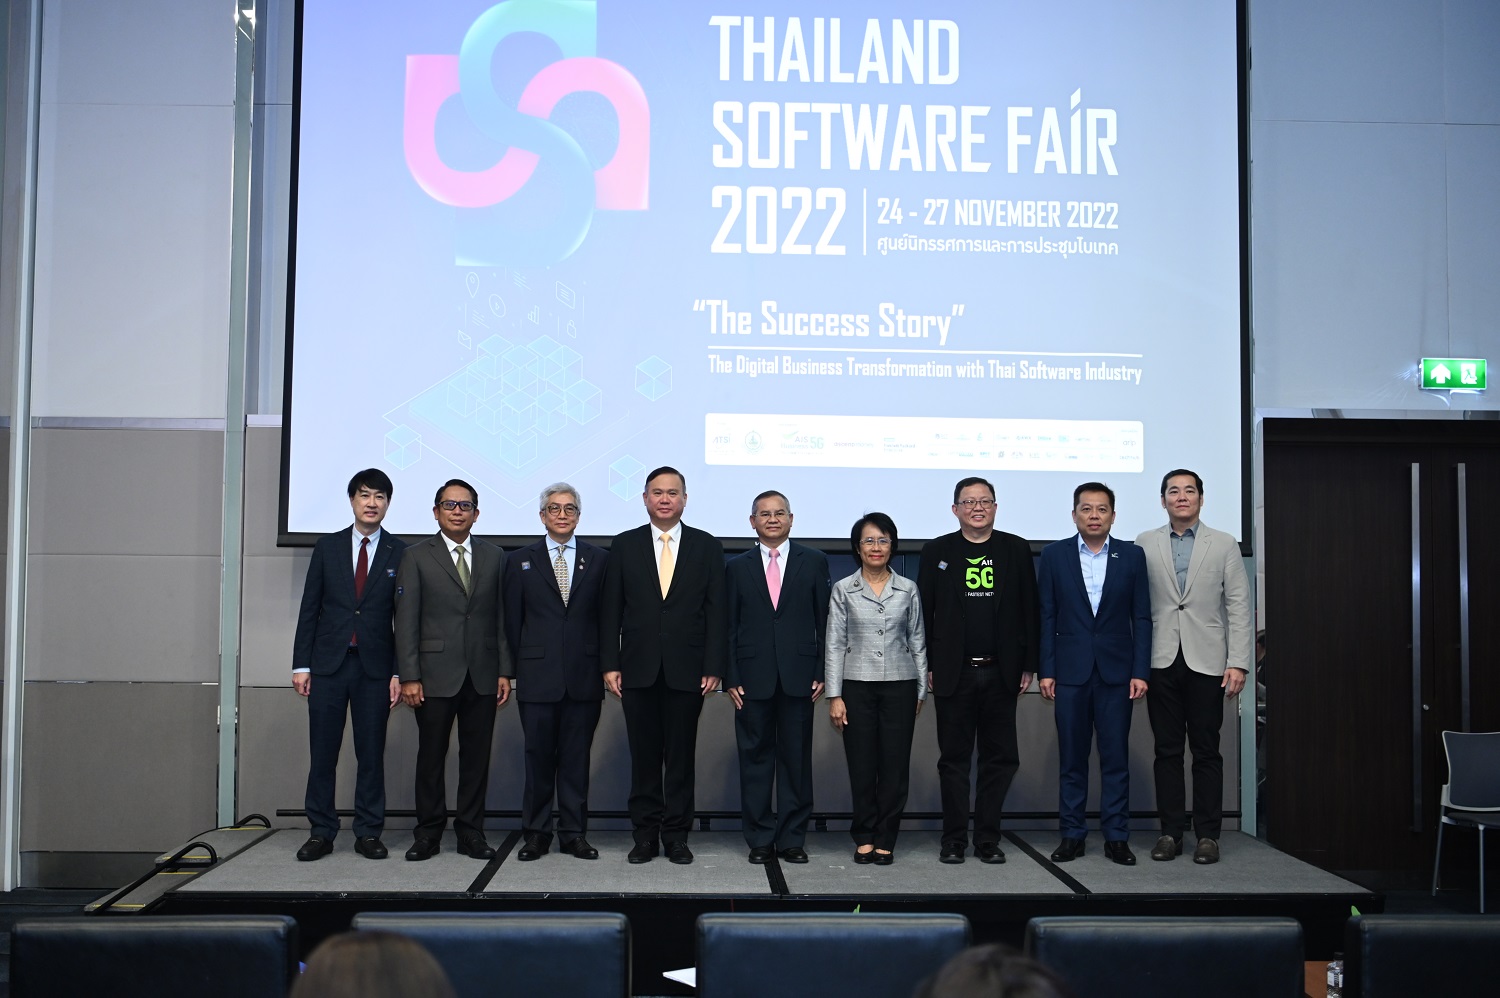 สมาคมอุตสาหกรรมซอฟต์แวร์ไทย จัดงาน Thailand Software Fair 2022 มหกรรมรวมซอฟต์แวร์ไทย ยกระดับธุรกิจสู่ดิจิทัล 